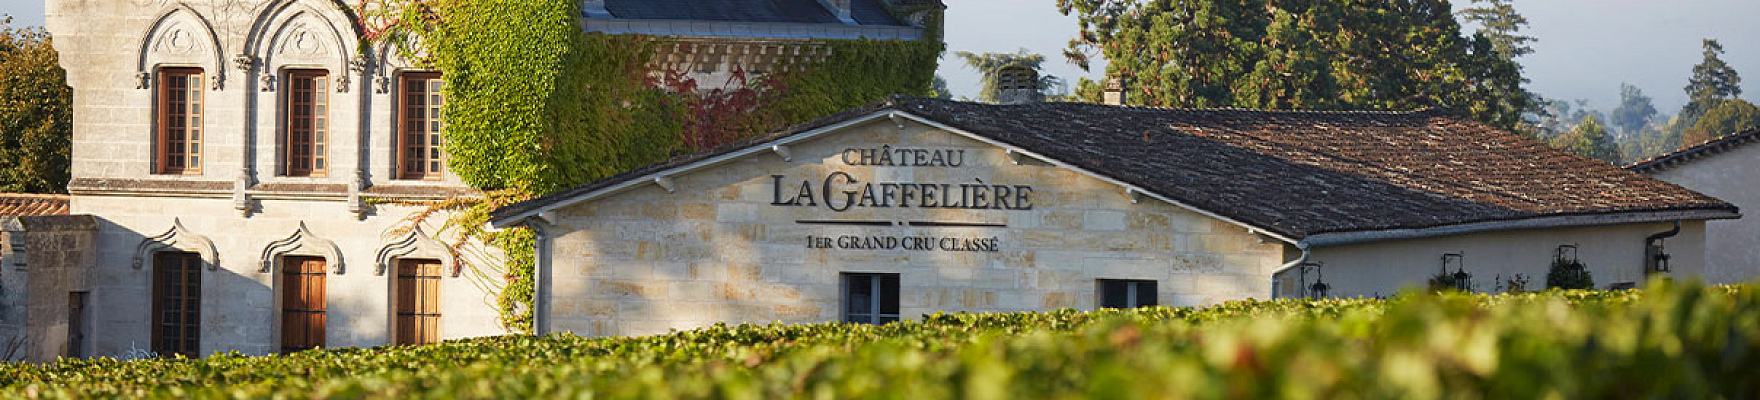 Château La Gaffeliere